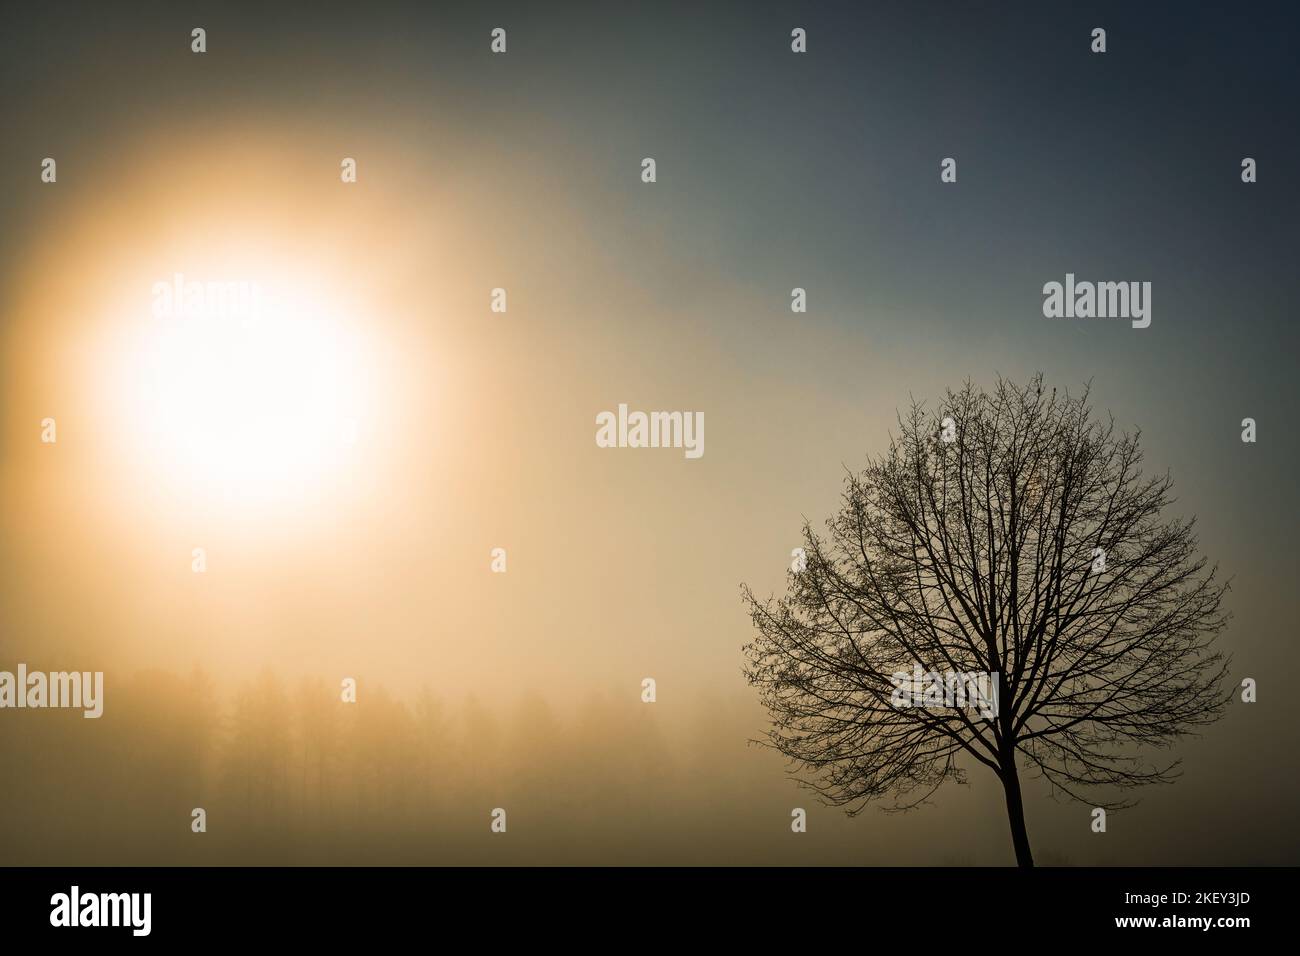 Baum im Nebel mit Sonne Stock Photo